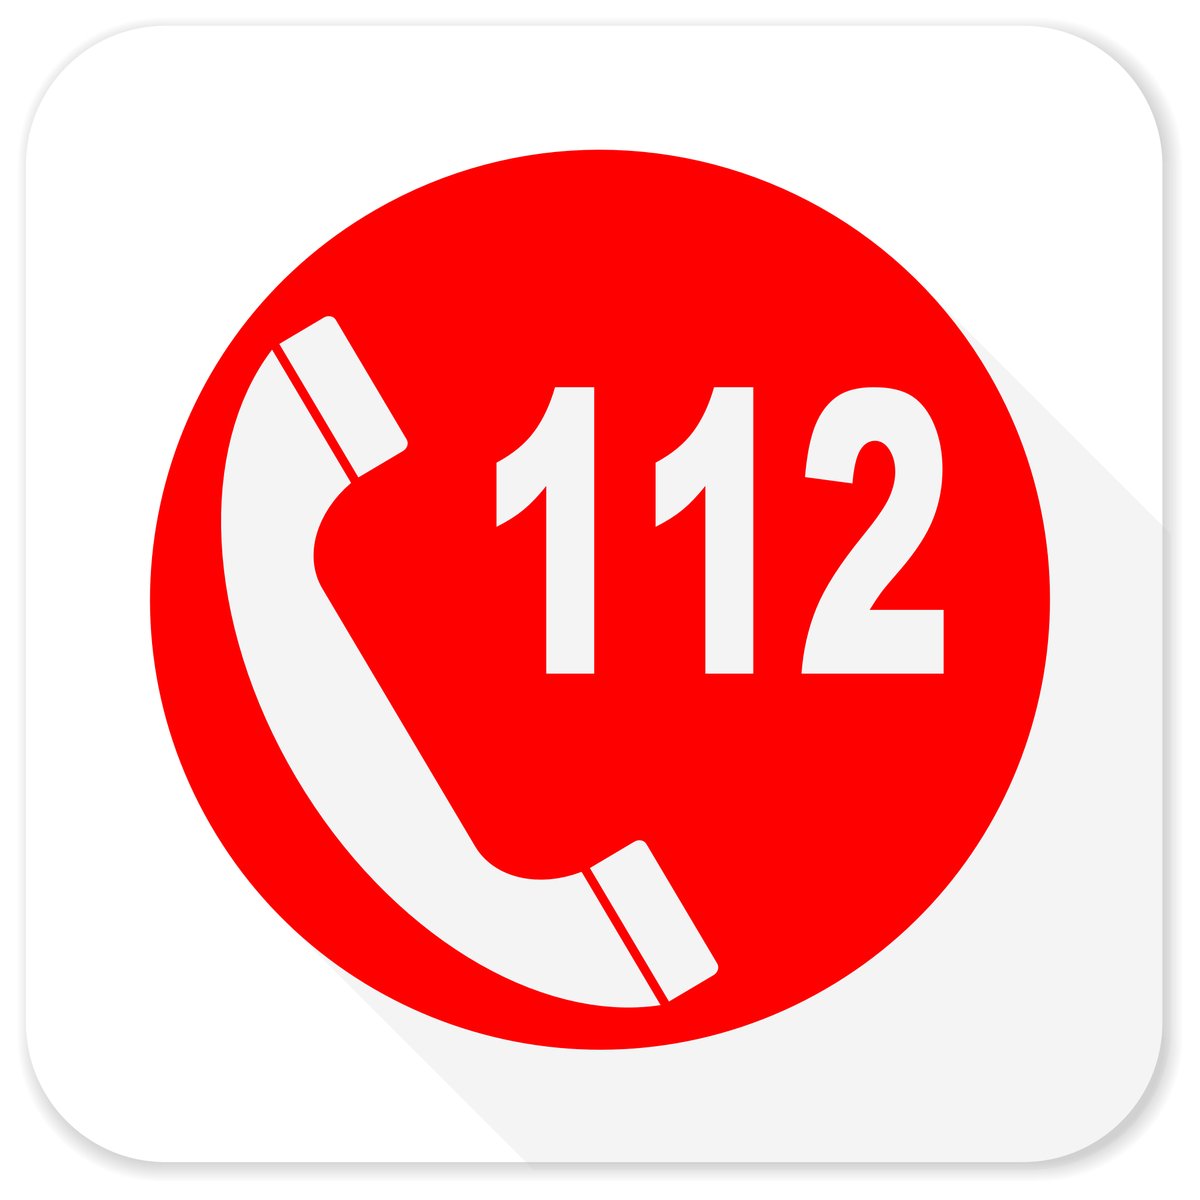 #panne #urgence Des perturbations sur le réseau @bouyguestelecom affectent communications téléphoniques et connexion internet de certains abonnés au nord de l'agglo dijonnaise. En cas de problème, appelez les secours avec plusieurs opérateurs différents et privilégiez le 112.